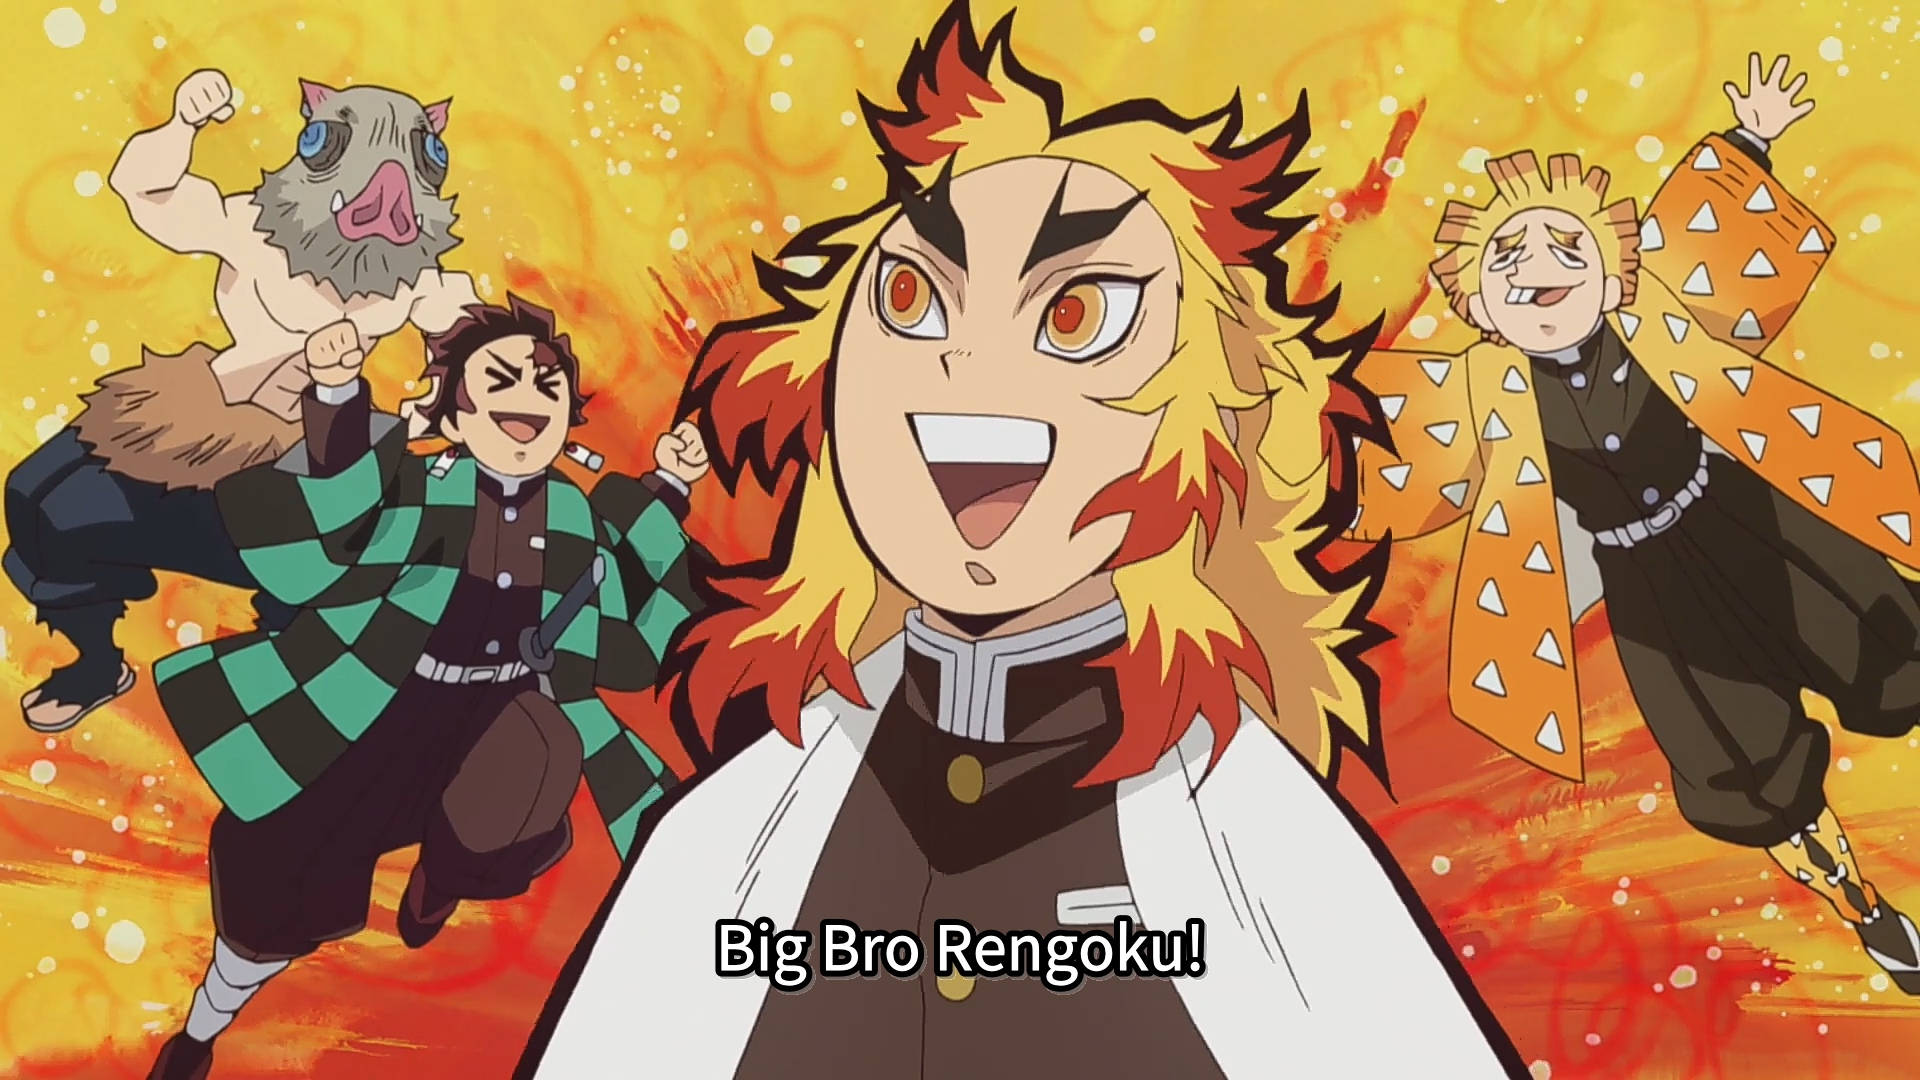 Tanjiro, Zenitsu and Inosuke calling The Flame Hashira as Big Bro Rengoku wallpaper.